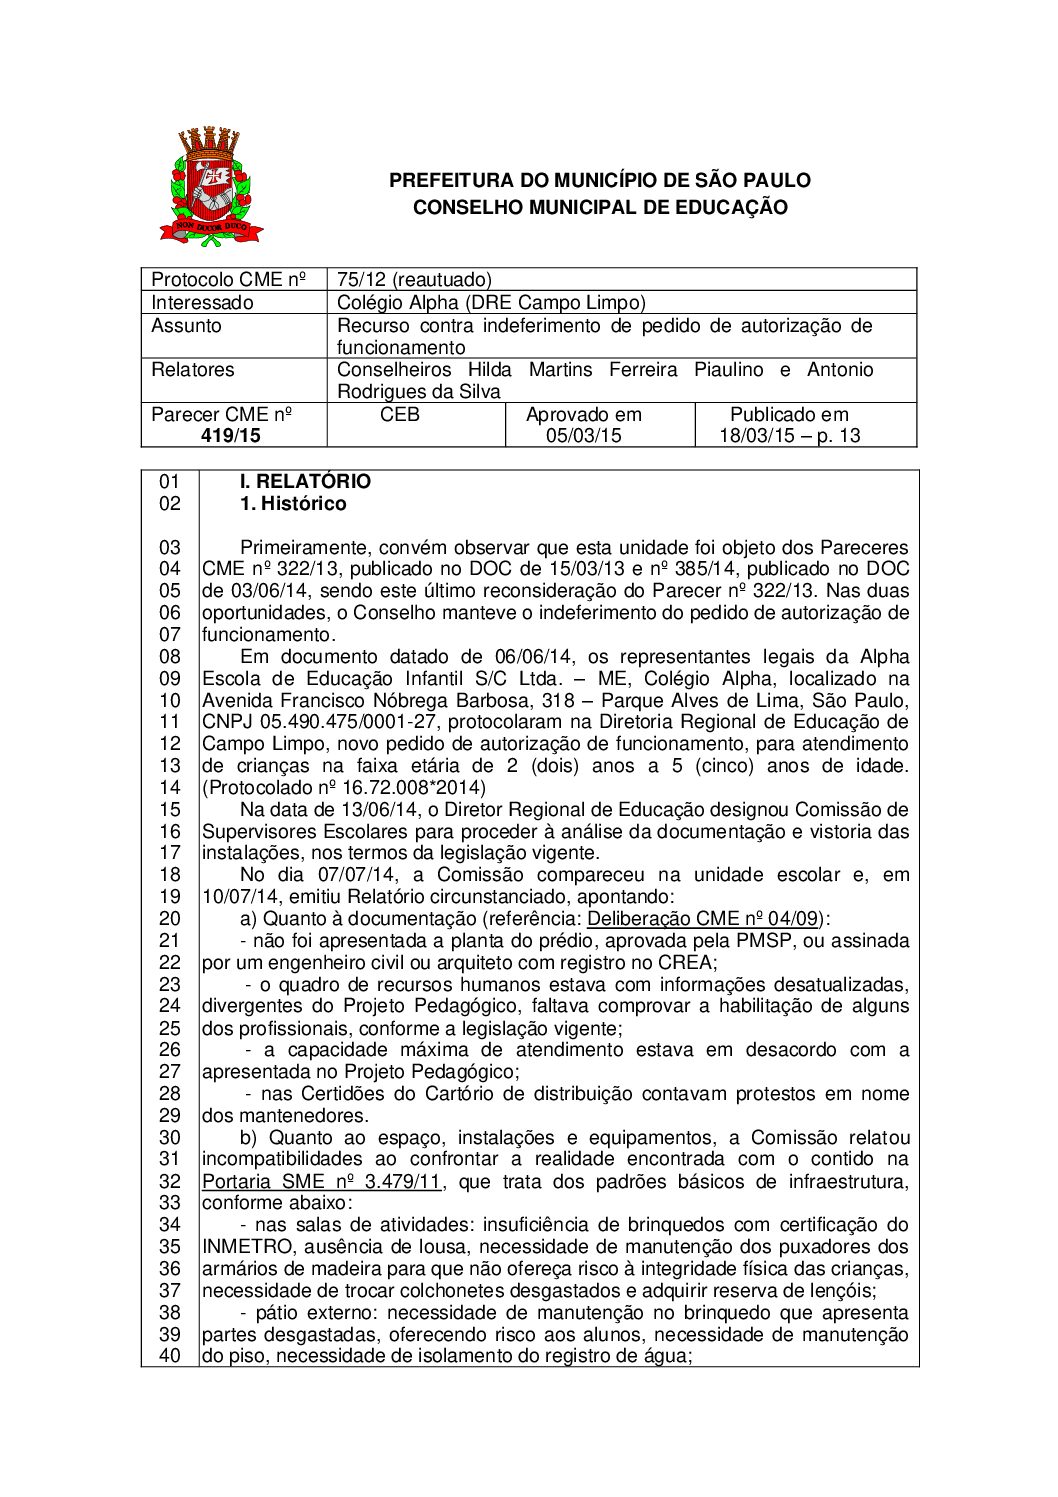 Parecer CME nº 419/2015 - Colégio Alpha (DRE Campo Limpo) - Recurso contra indeferimento de pedido de autorização de funcionamento 